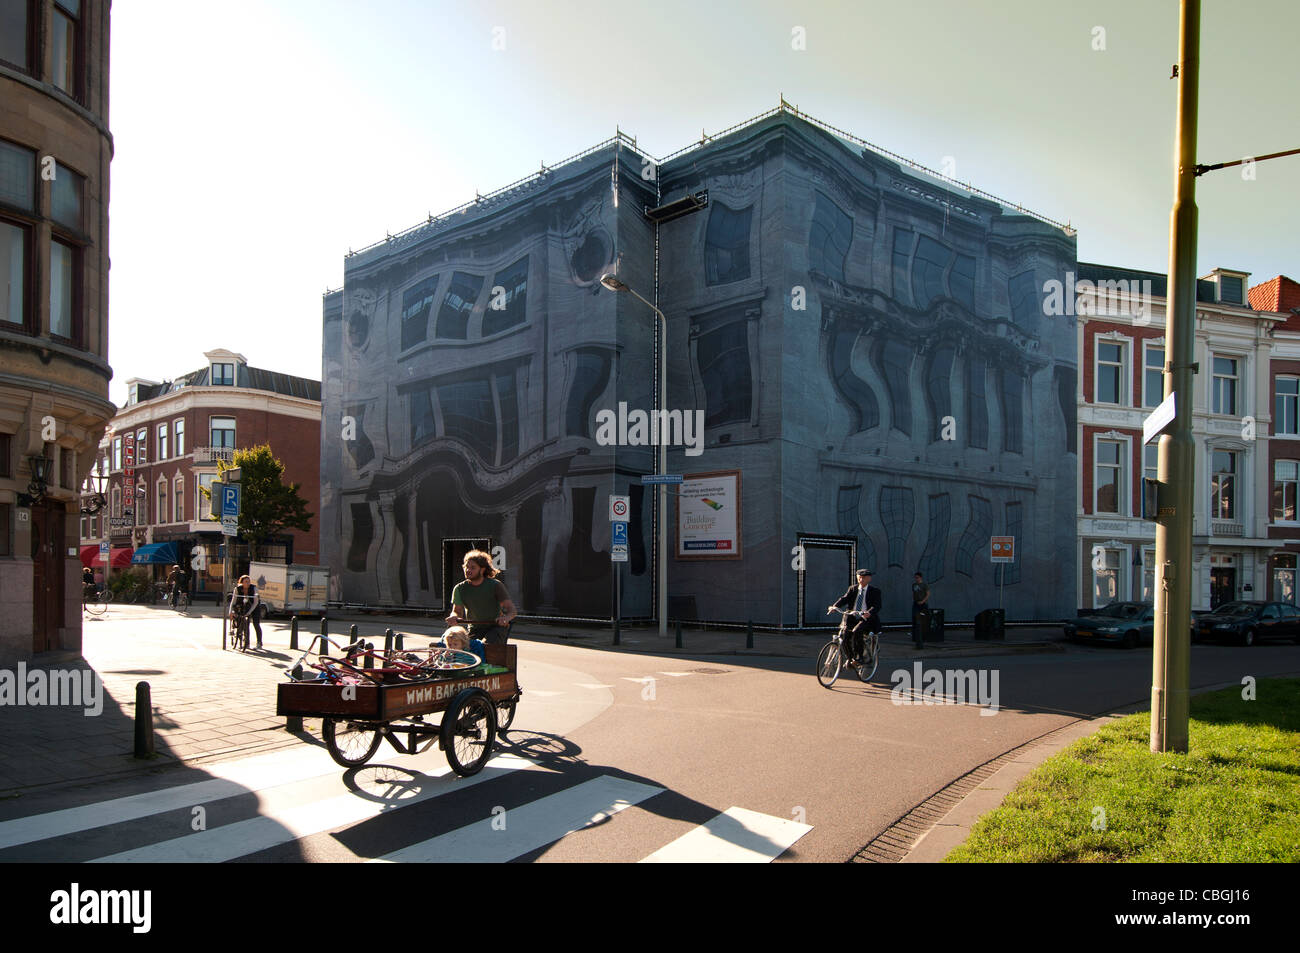 Ein Trompe l ' oeil oder Illusion bei Prins Hendrikplein, den Haag, Den Haag, Niederlande, Lieferung Fahrrad mit Kind Stockfoto